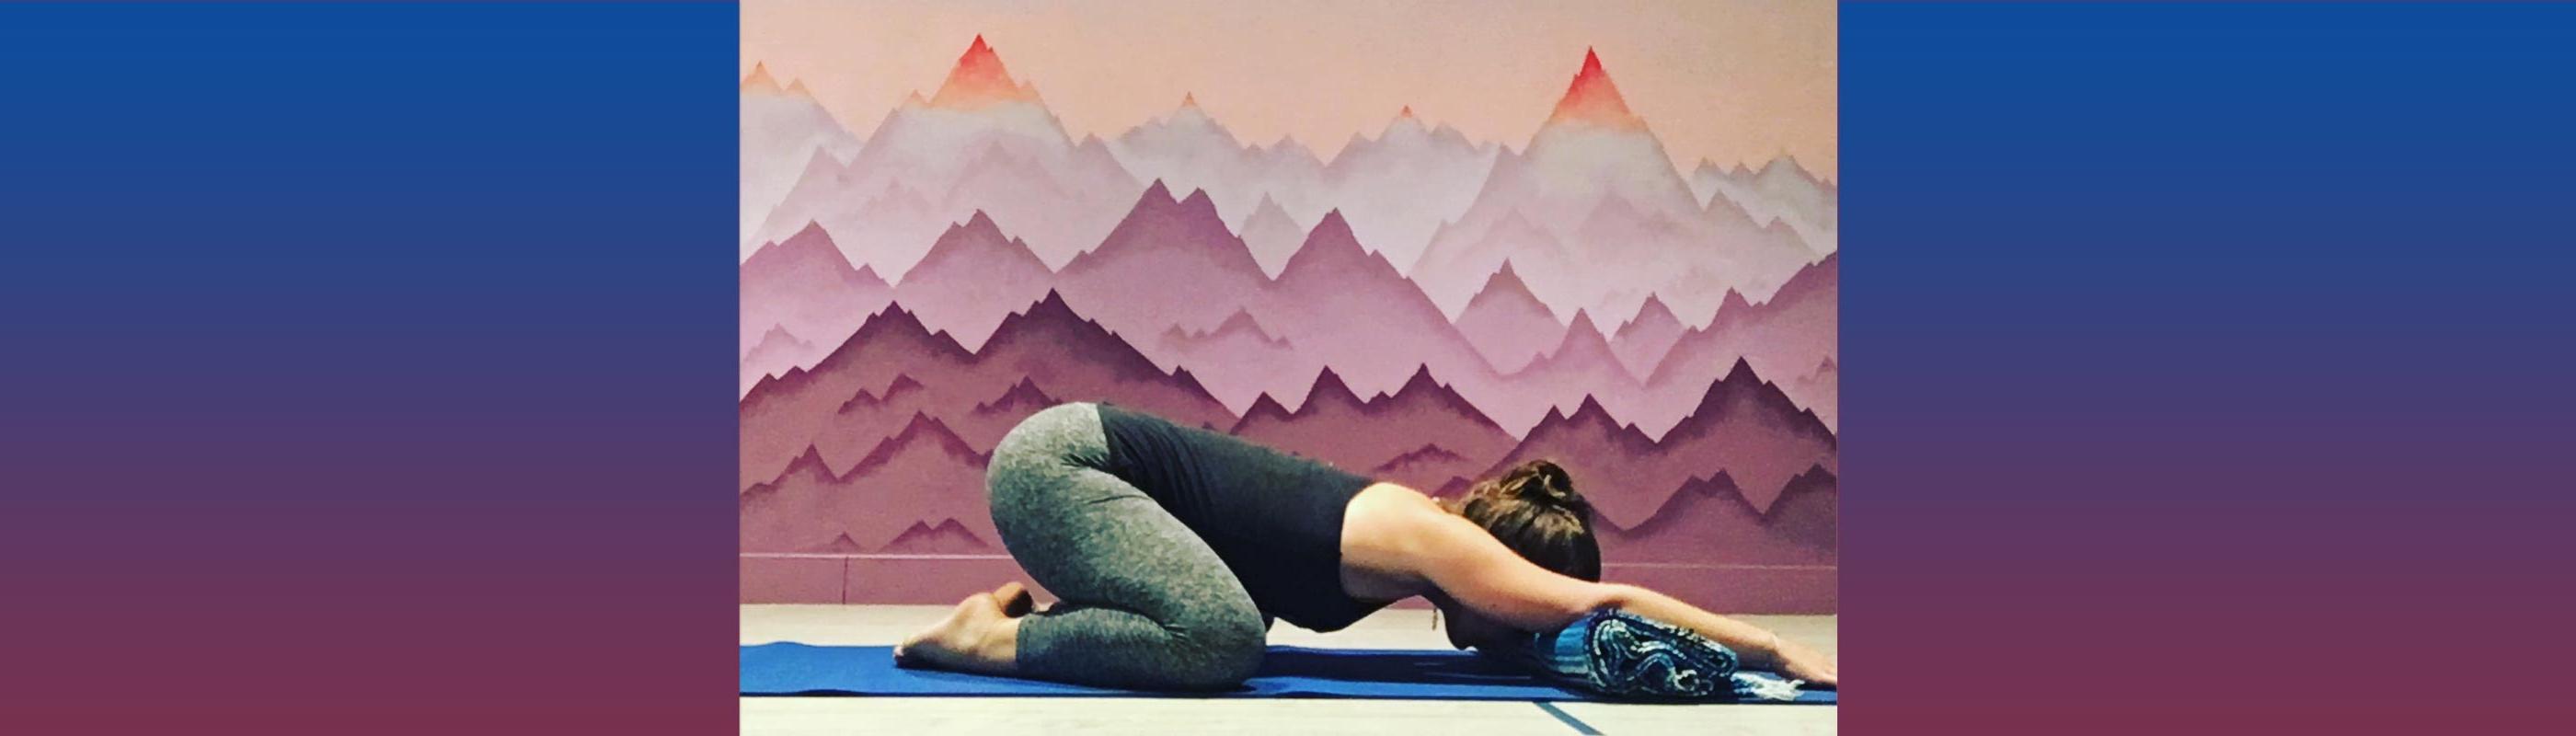 Instructor Lena Schmidt demonstrating yoga pose